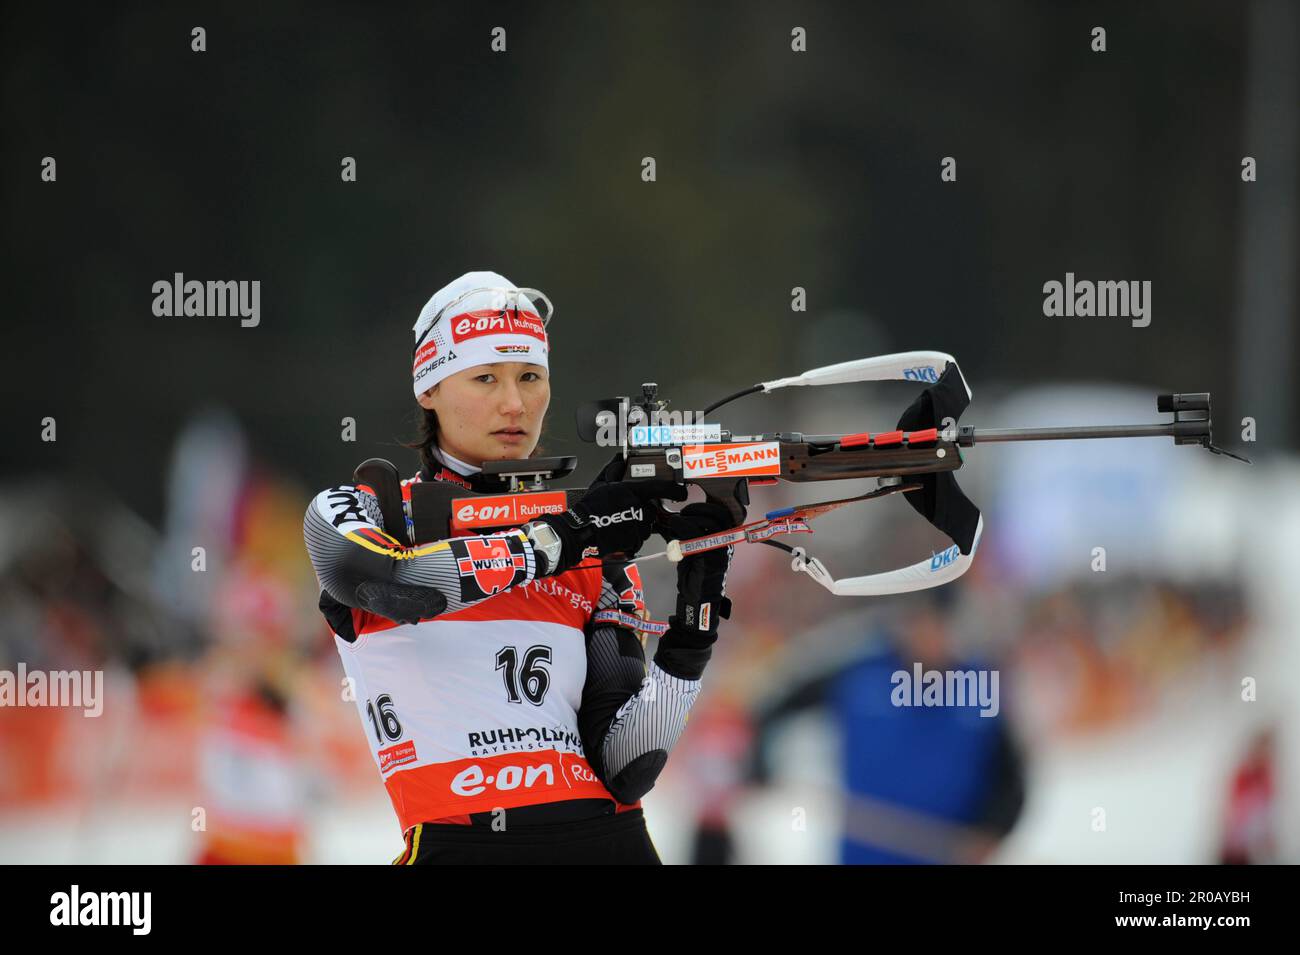 Simone DENKINGER, Aktion Schießen.Biathlon 10KM Verfolgung der Frauen am 13.1.2008 in Ruhpolding Stock Photo